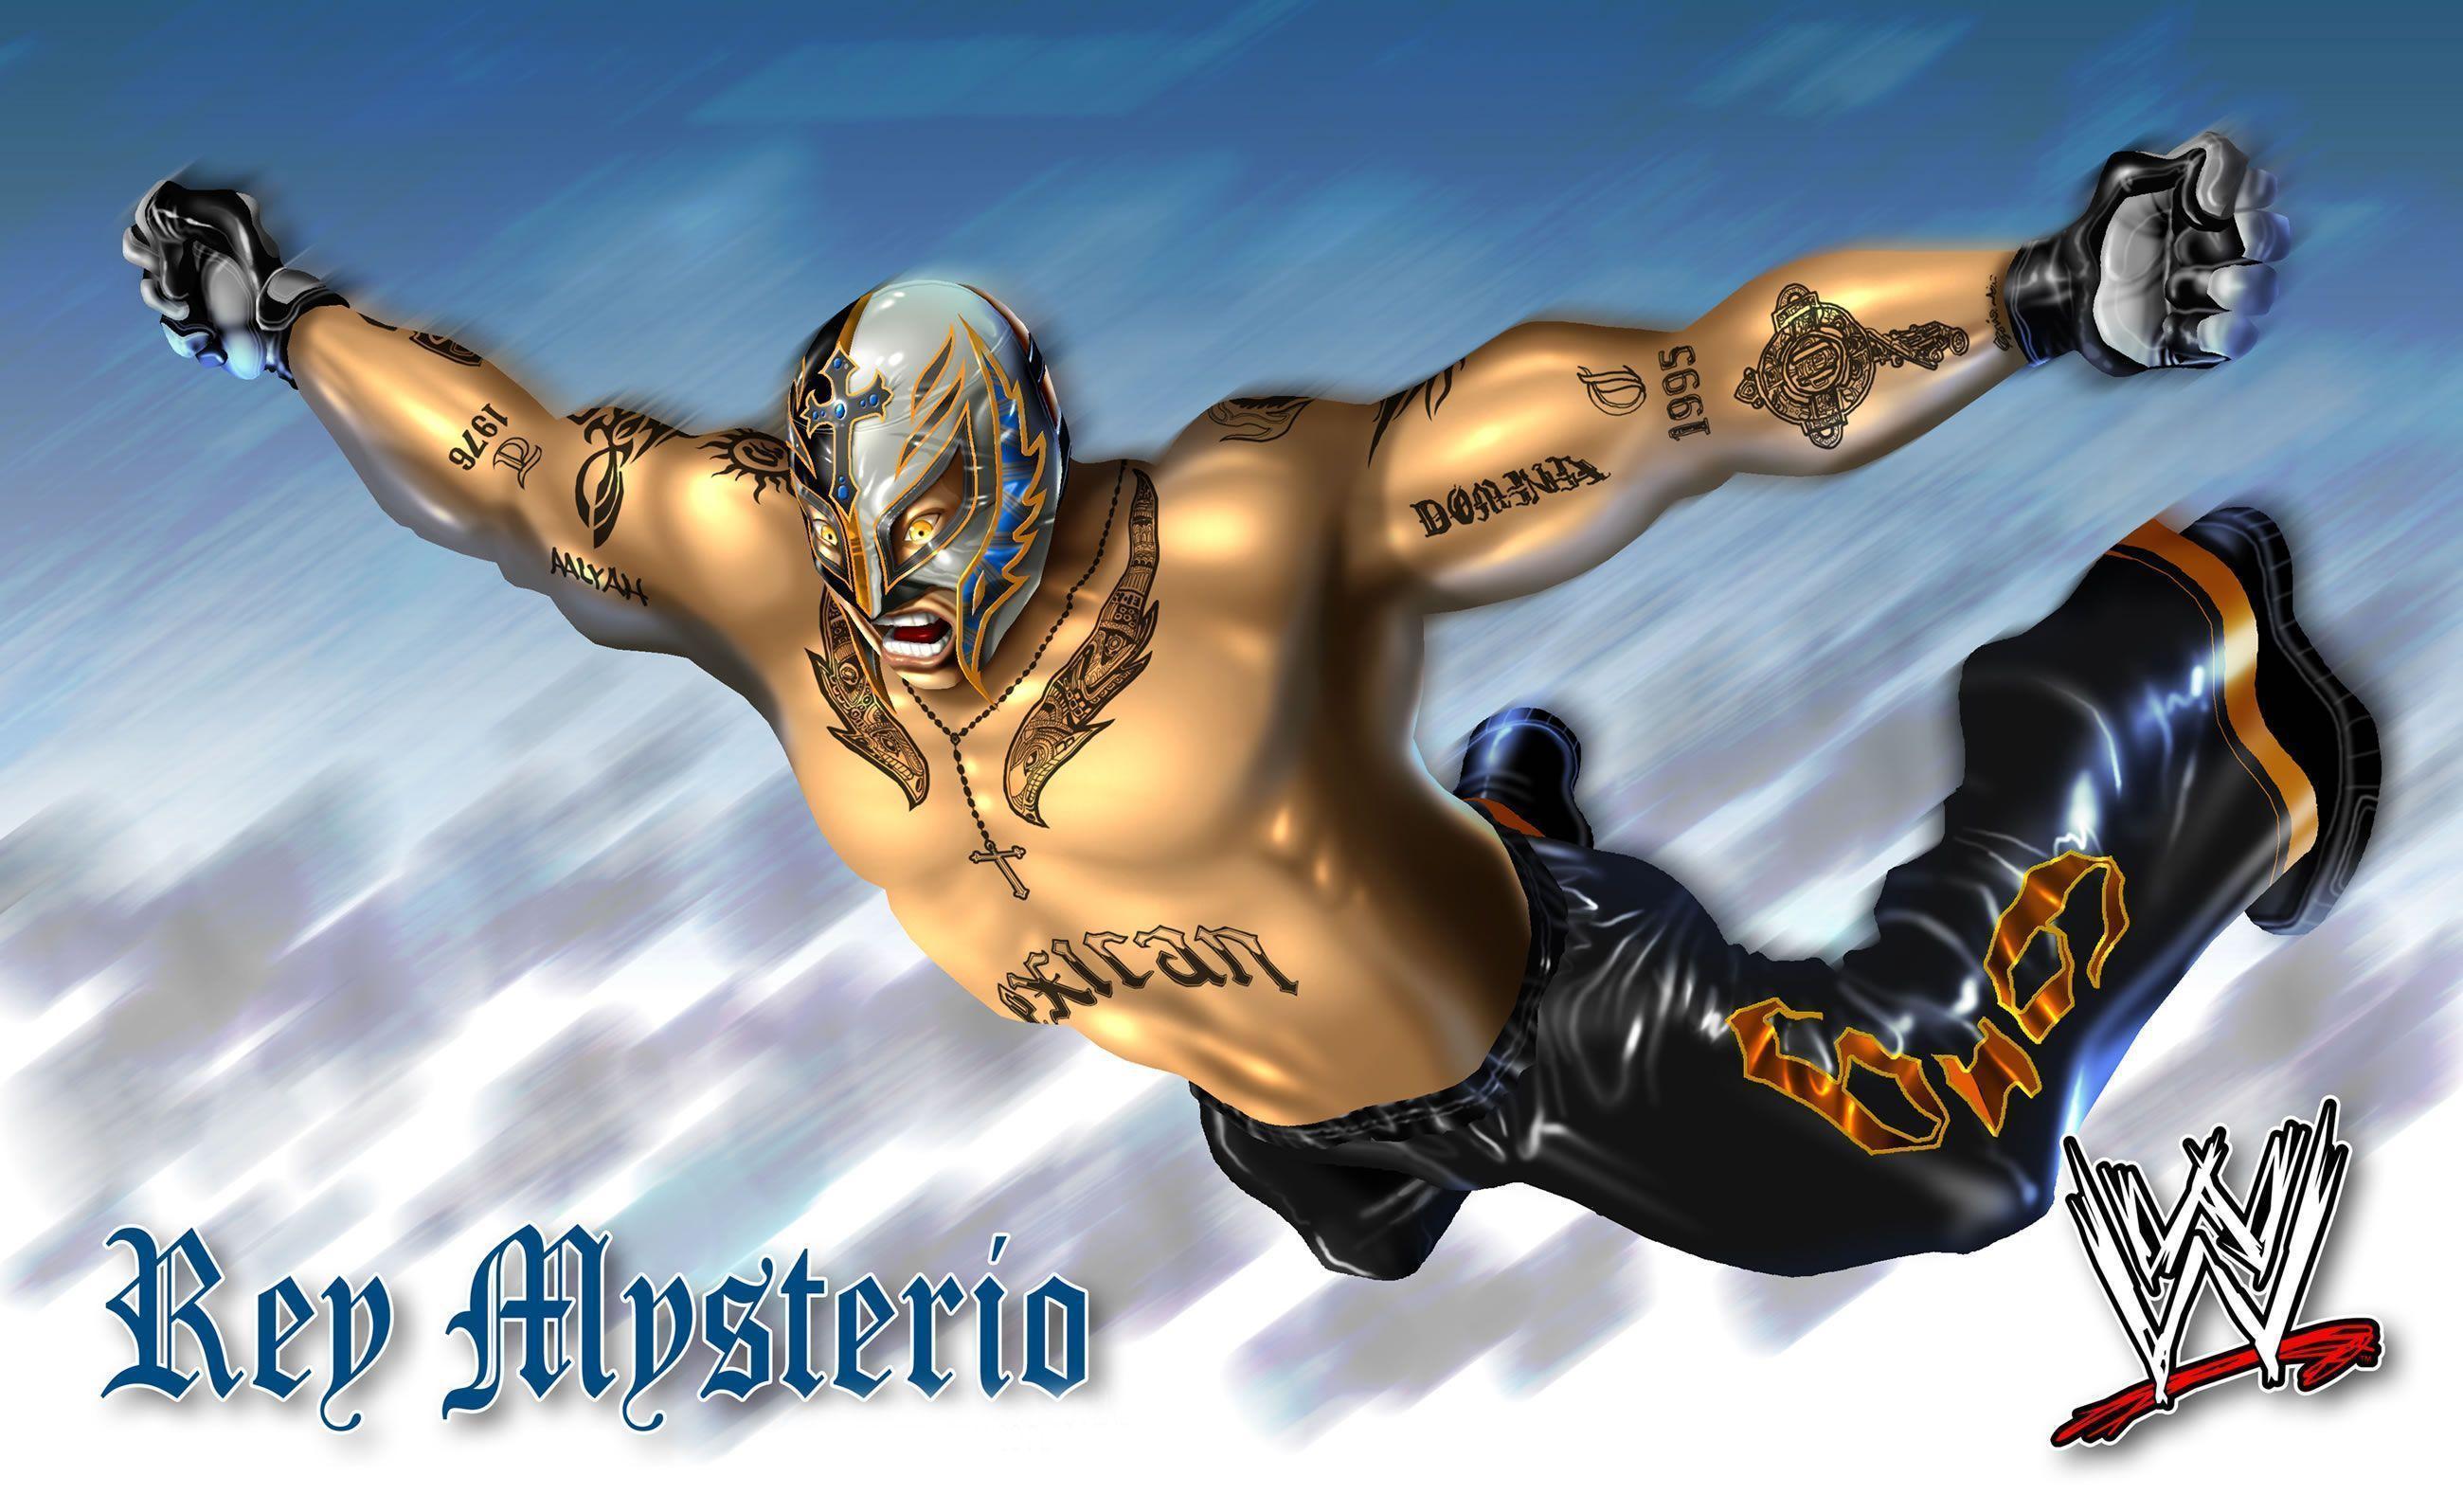 Rey Mysterio WWE Professional Wrestler HD Desktop WallpaperHD